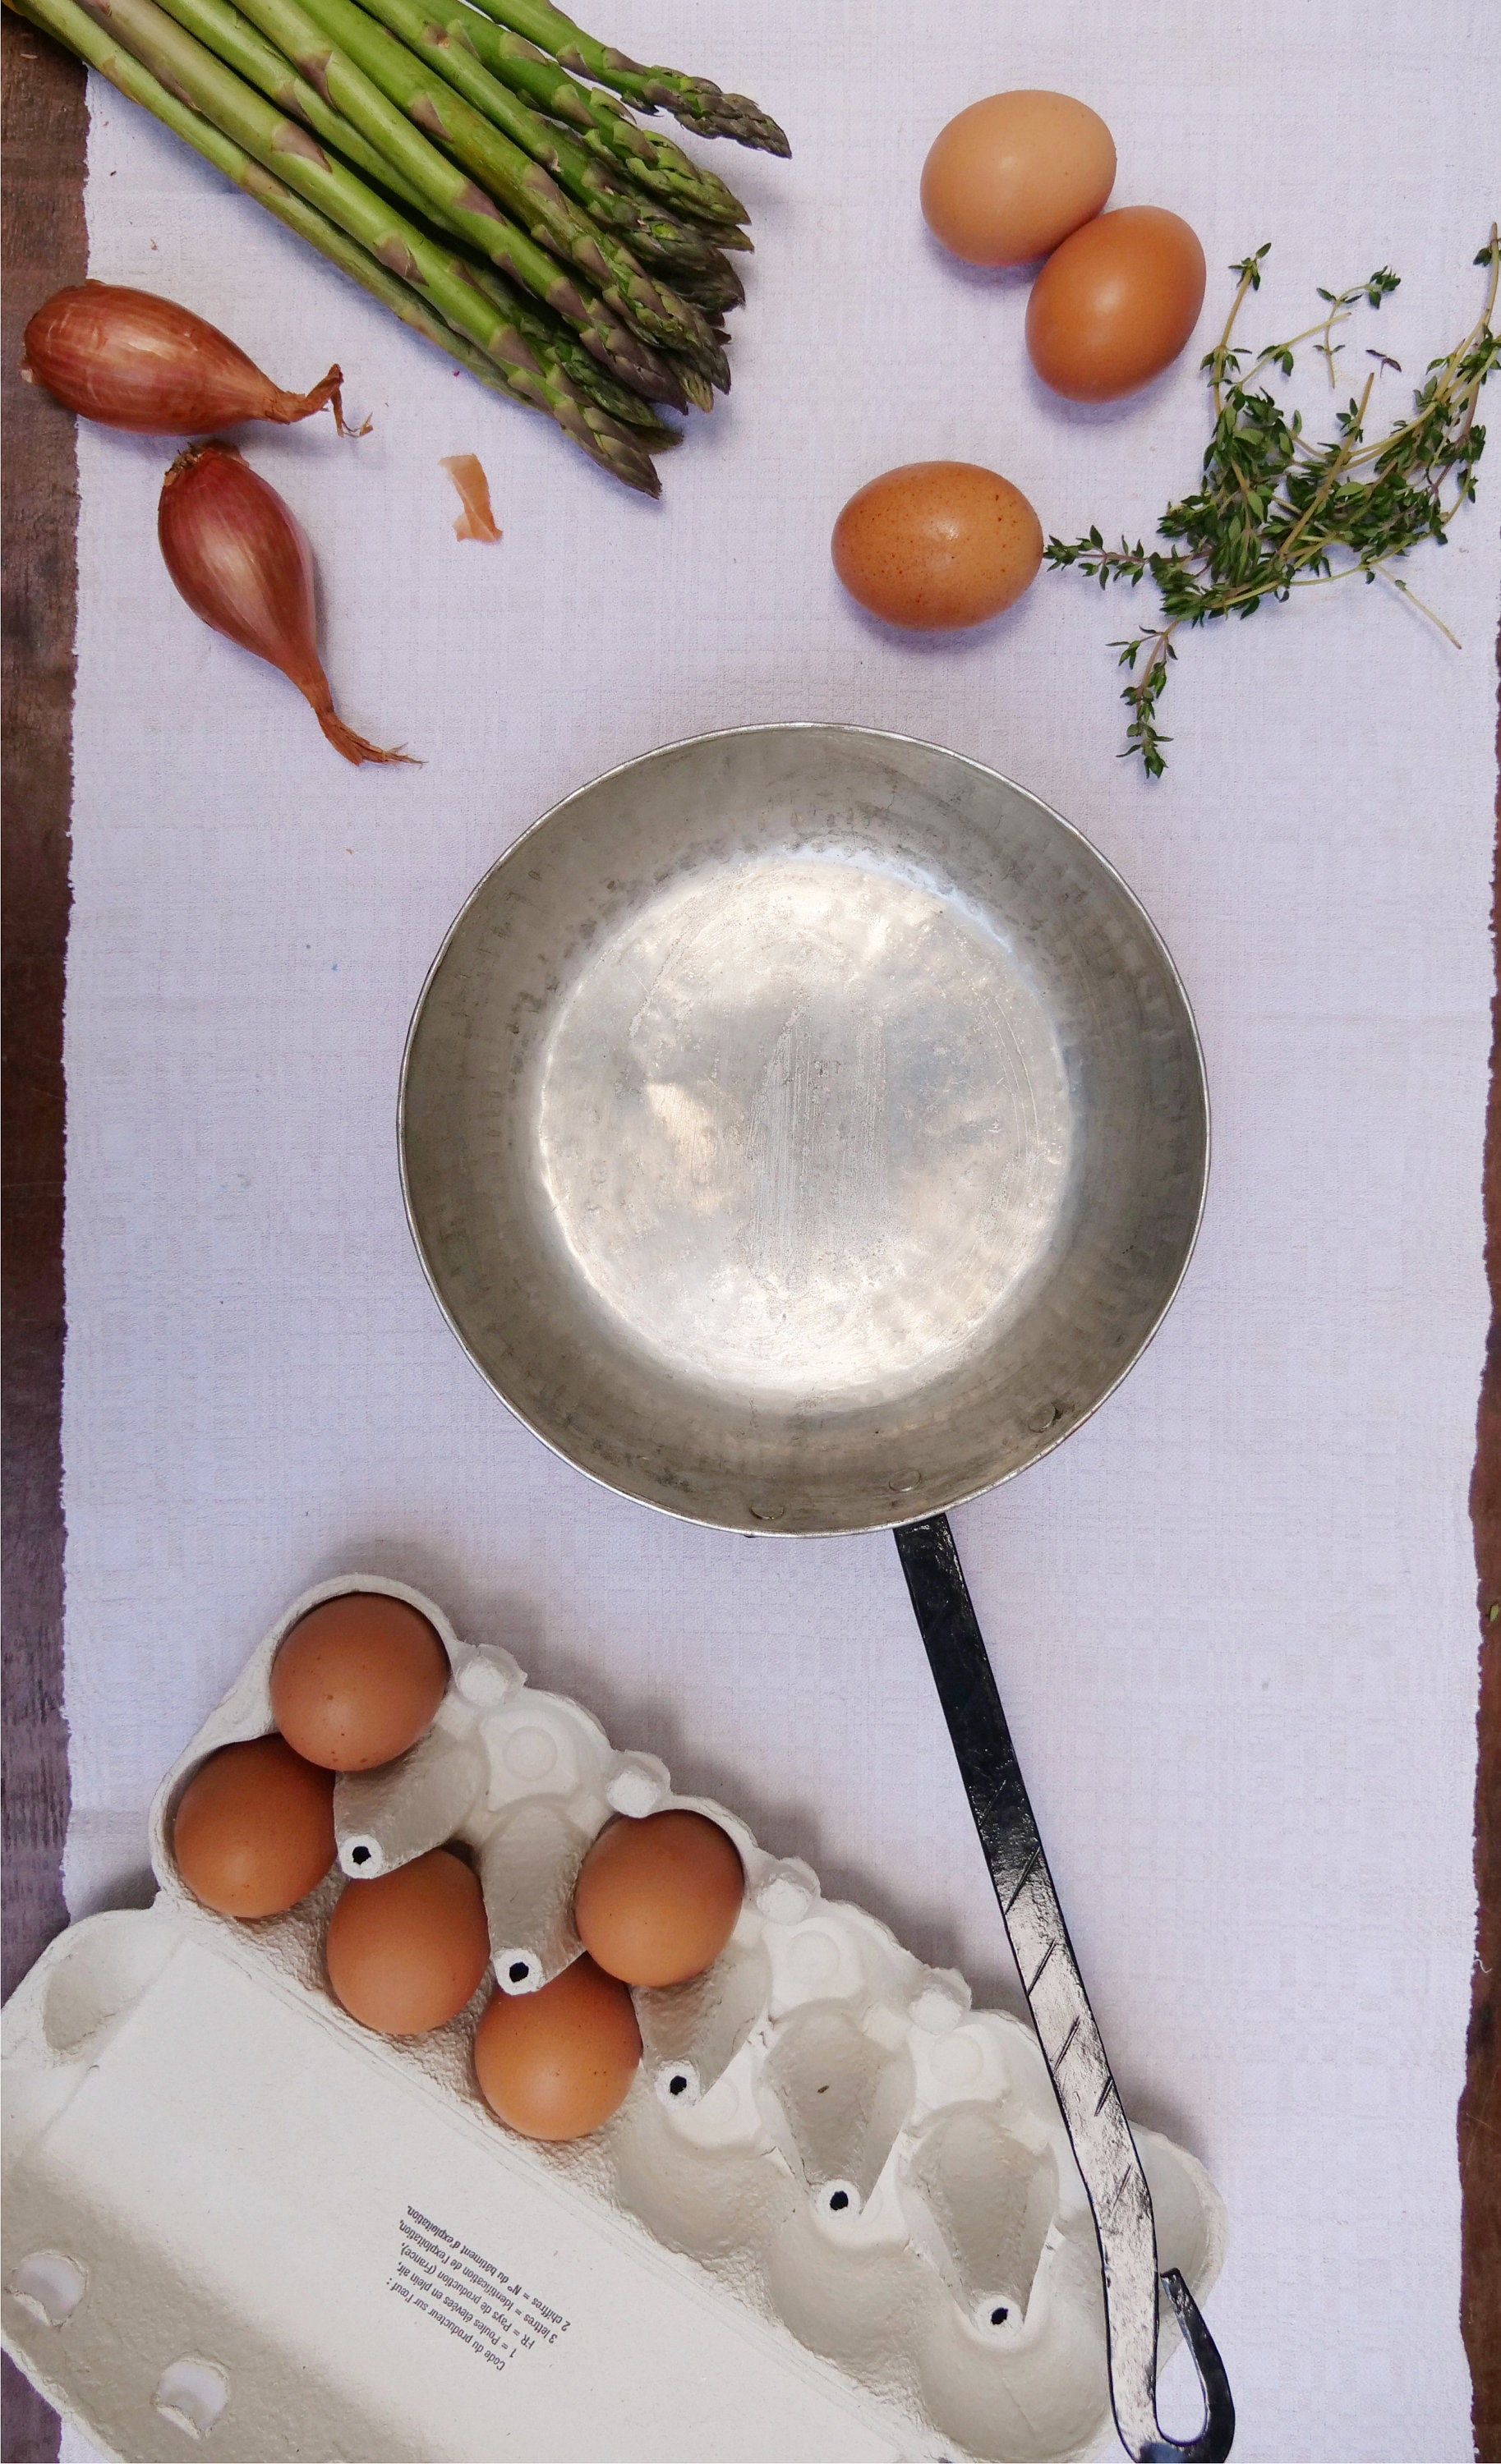 1pc Microwave Egg Cooker,Microwave Egg Maker,Fast Egg Omelet Maker Kitchen  Cooking Tool Microwave Egg Cooker for Sandwiches and Bagels , Microwave and  Dishwasher Safe